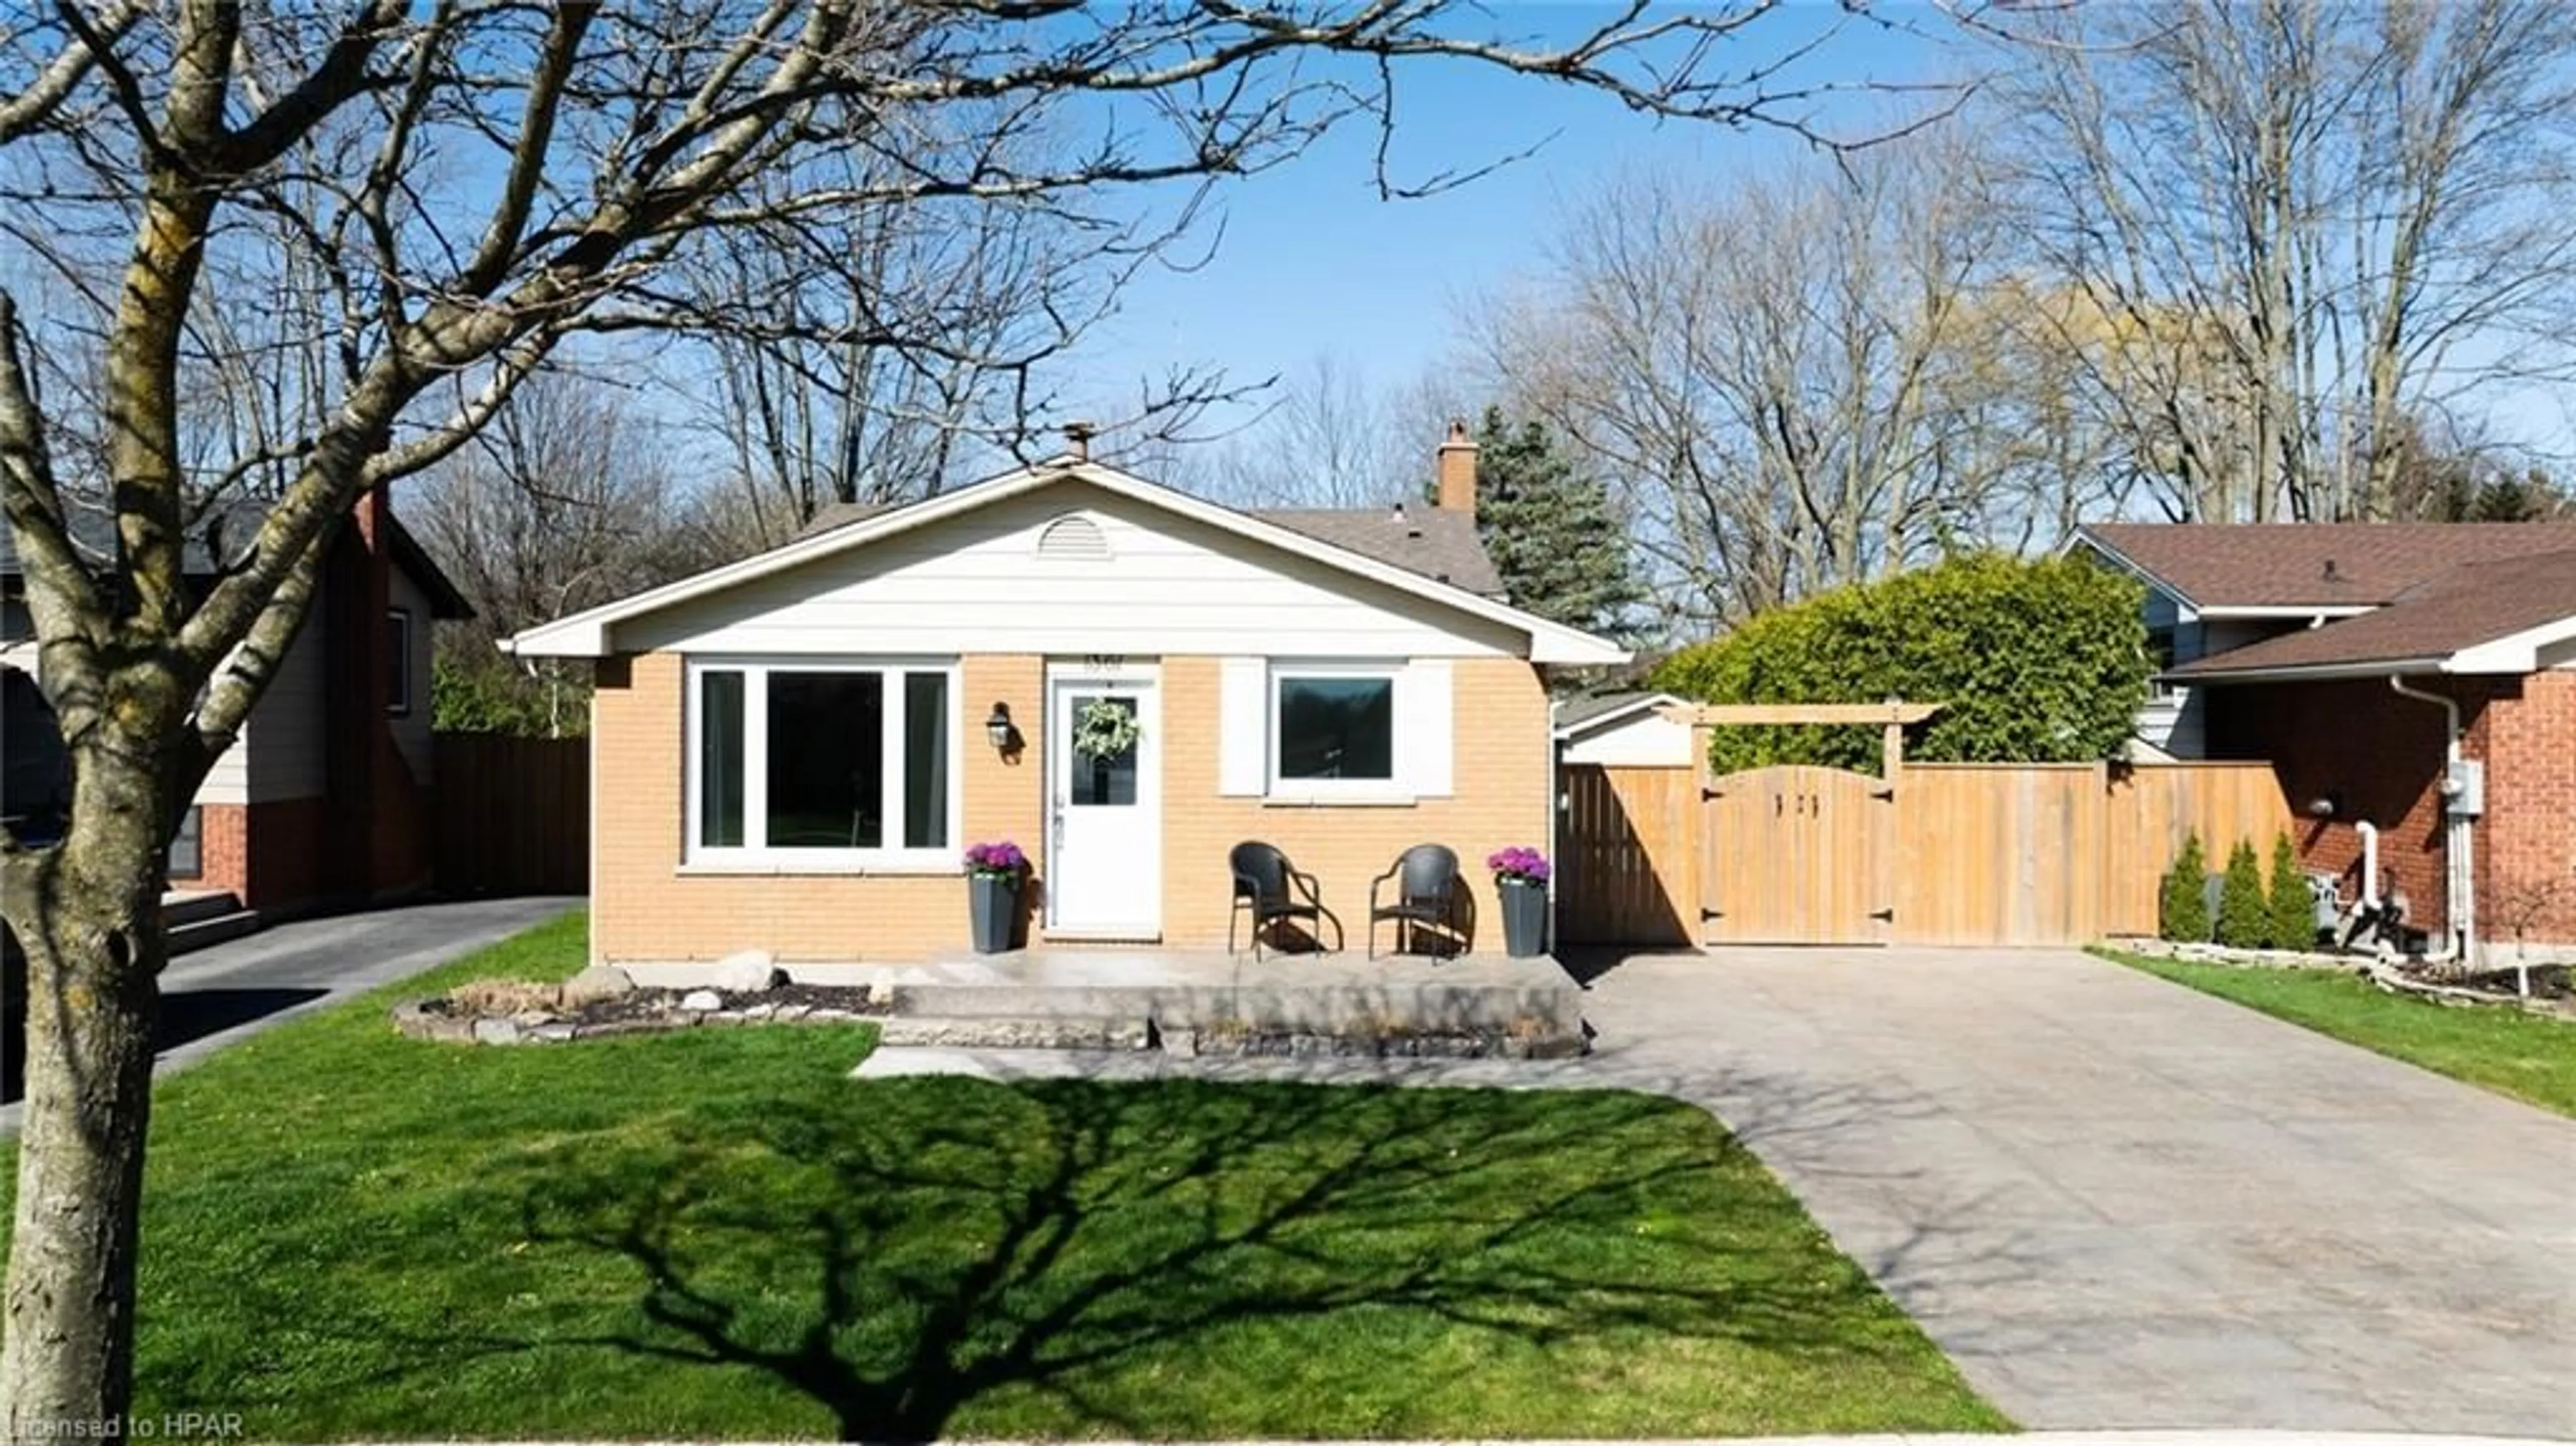 Cottage for 1361 Aldersbrook Rd, London Ontario N6G 3J1